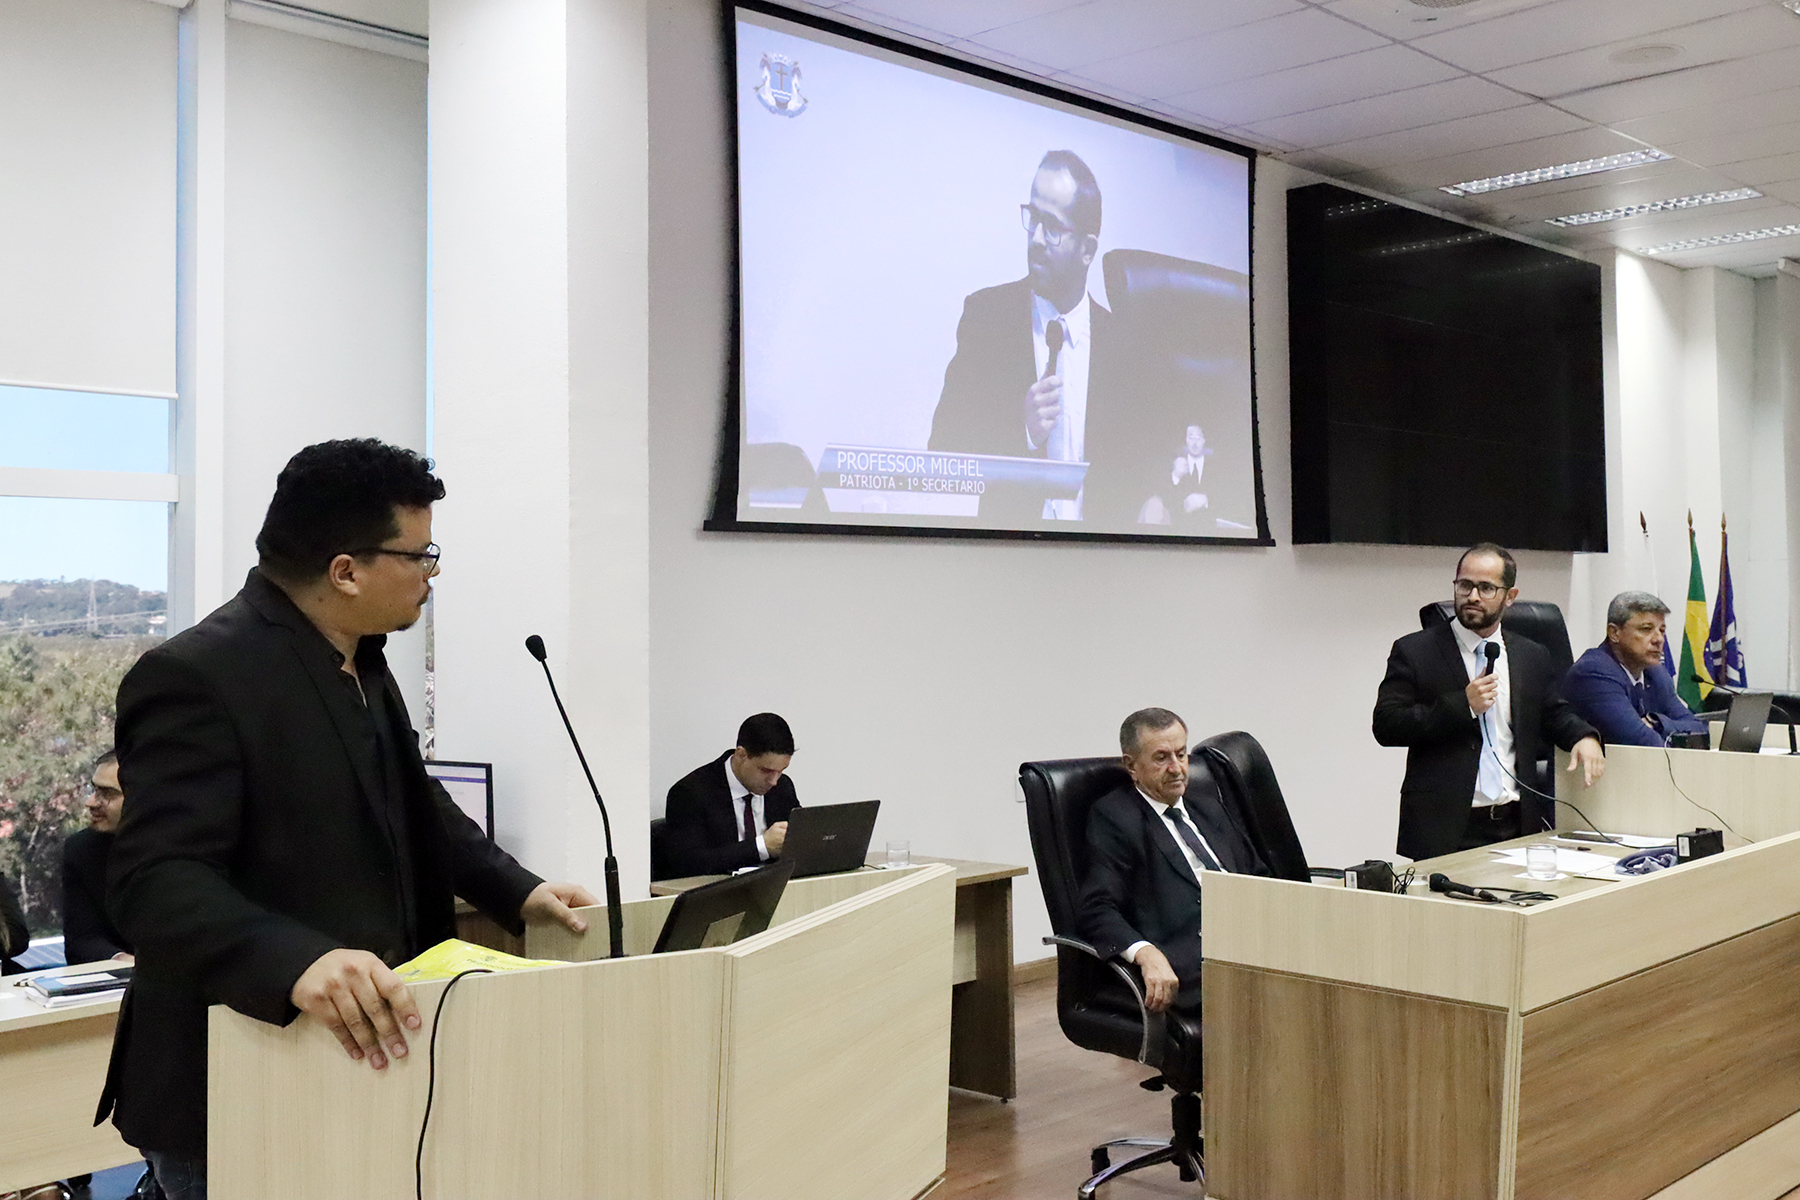 Thiago Rocha, apresentou o projeto para implantação de energia solar nos prédios da prefeitura, nesta terça-feira (7), na Câmara de Macaé, a convite de Professor Miche